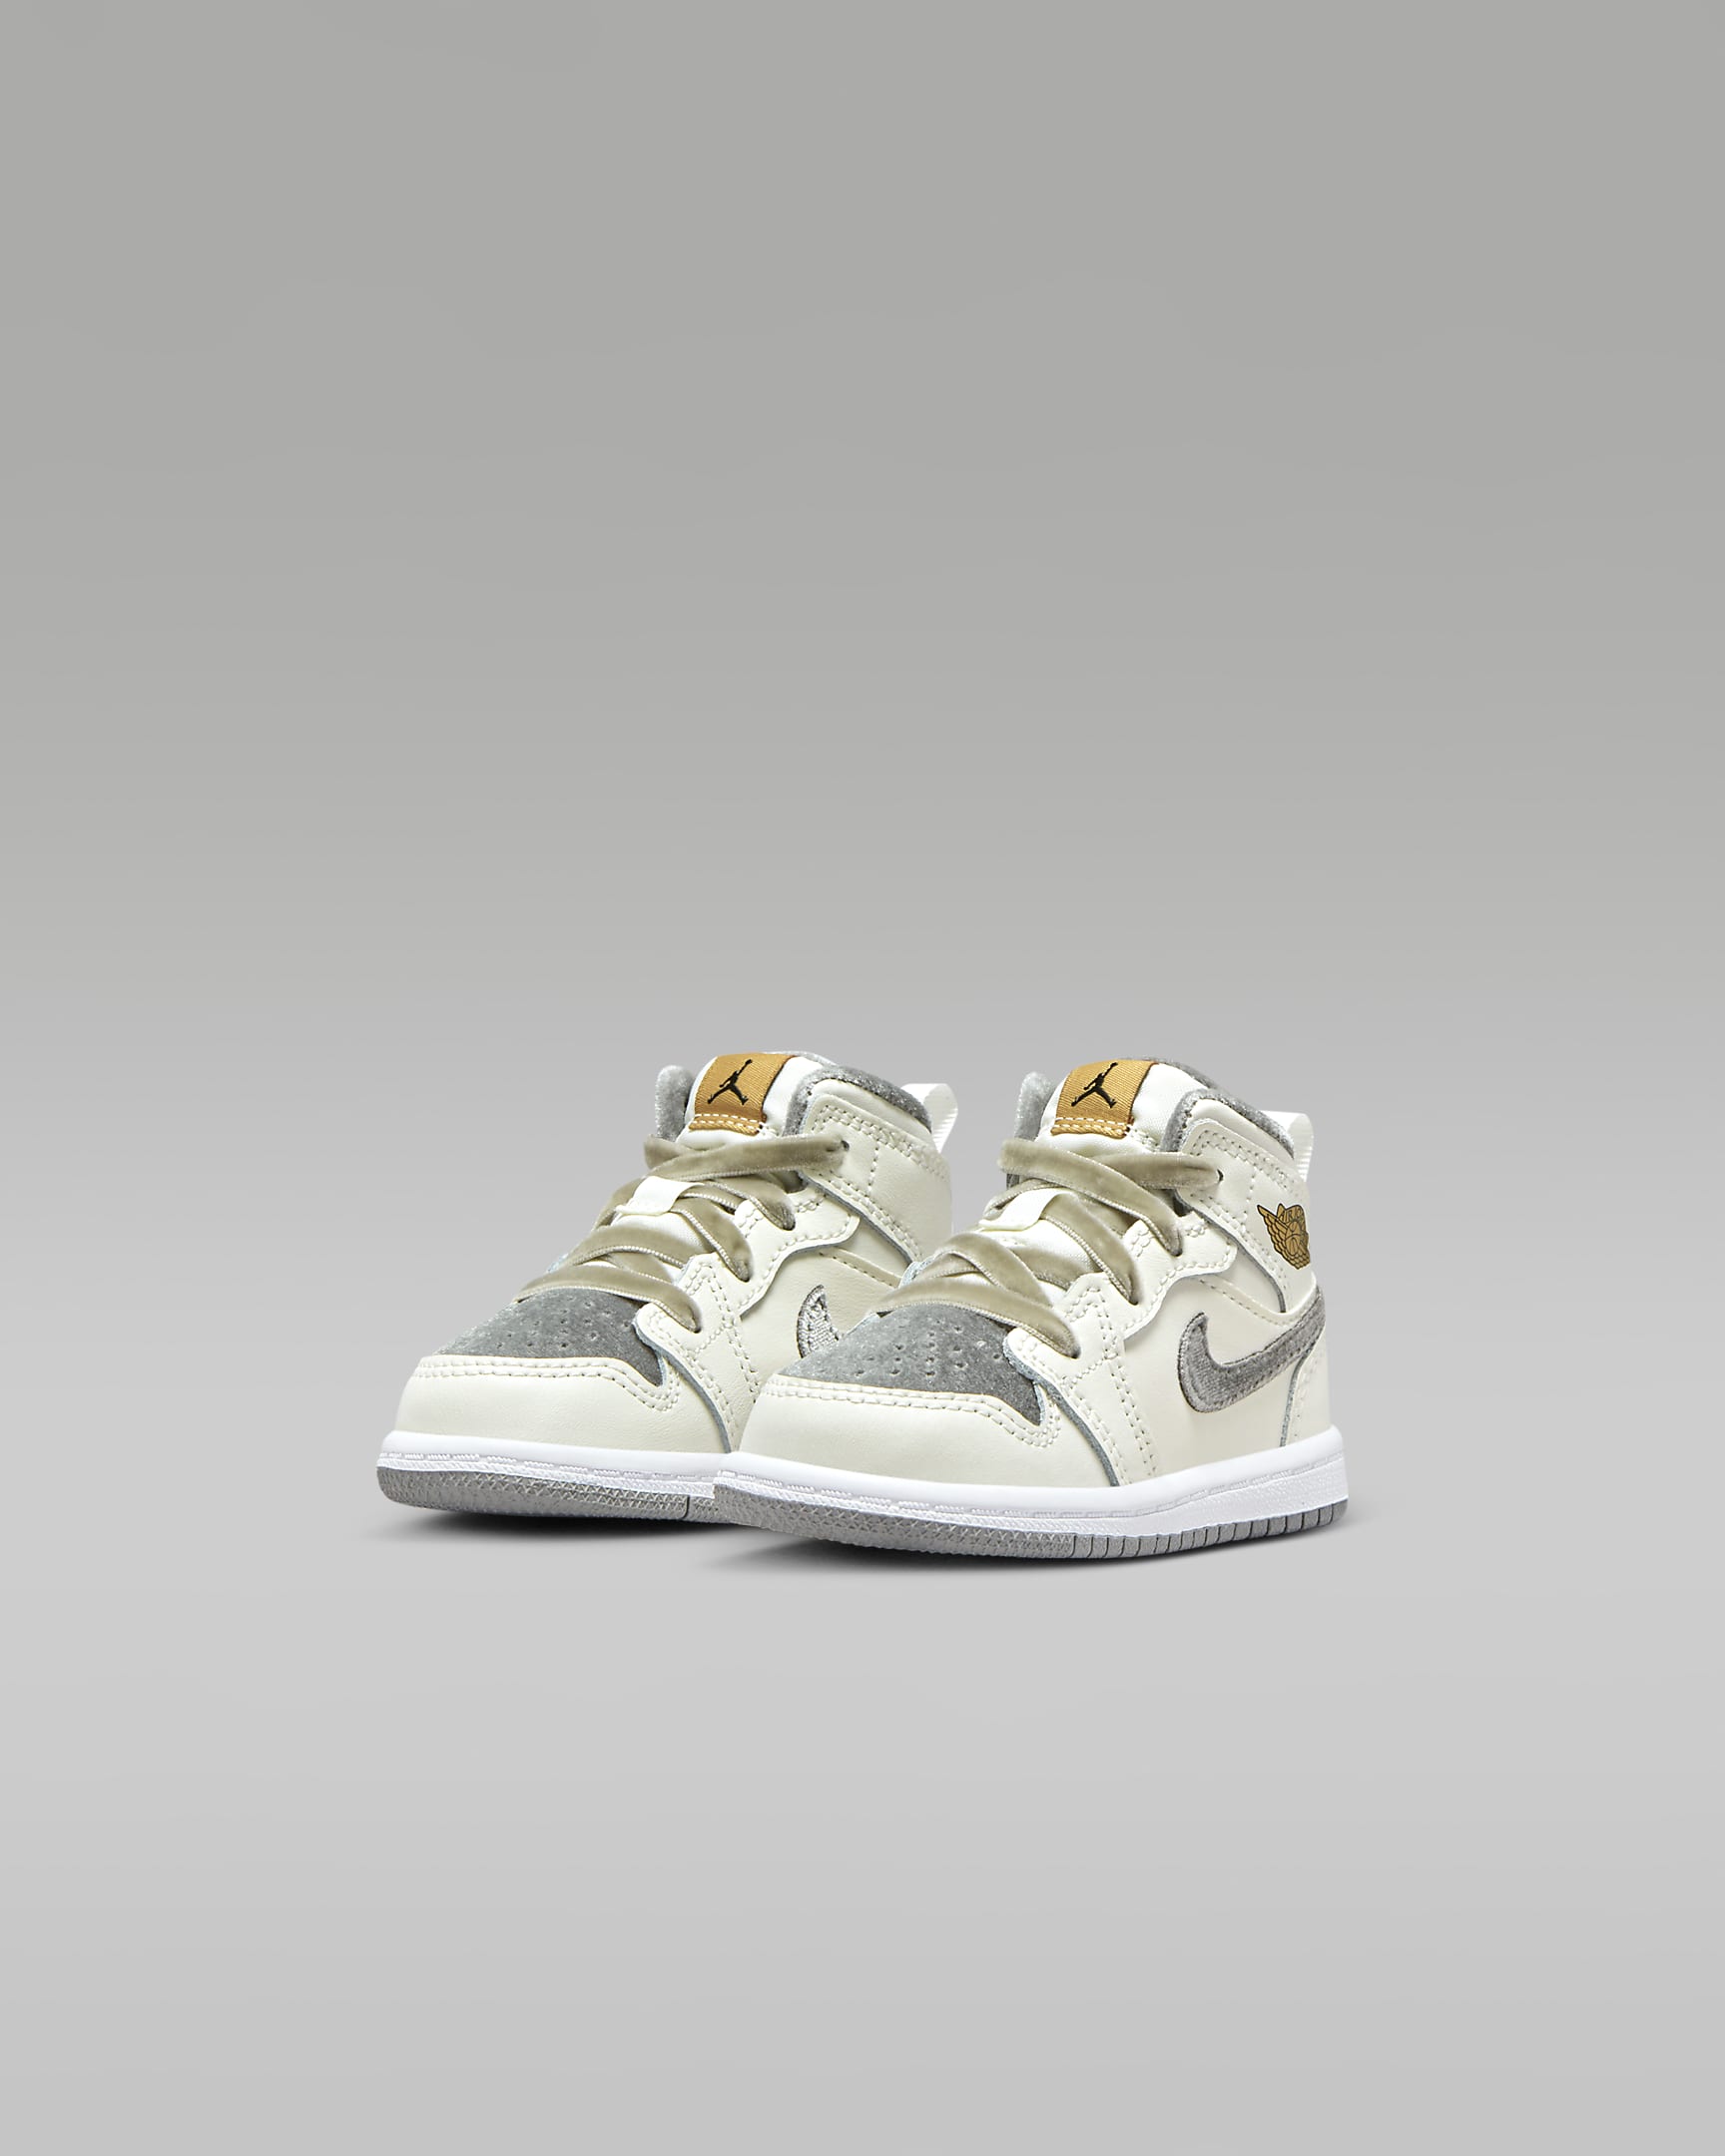 Jordan 1 Mid SE Baby/Toddler Shoes - Sail/Metallic Gold/Flat Pewter